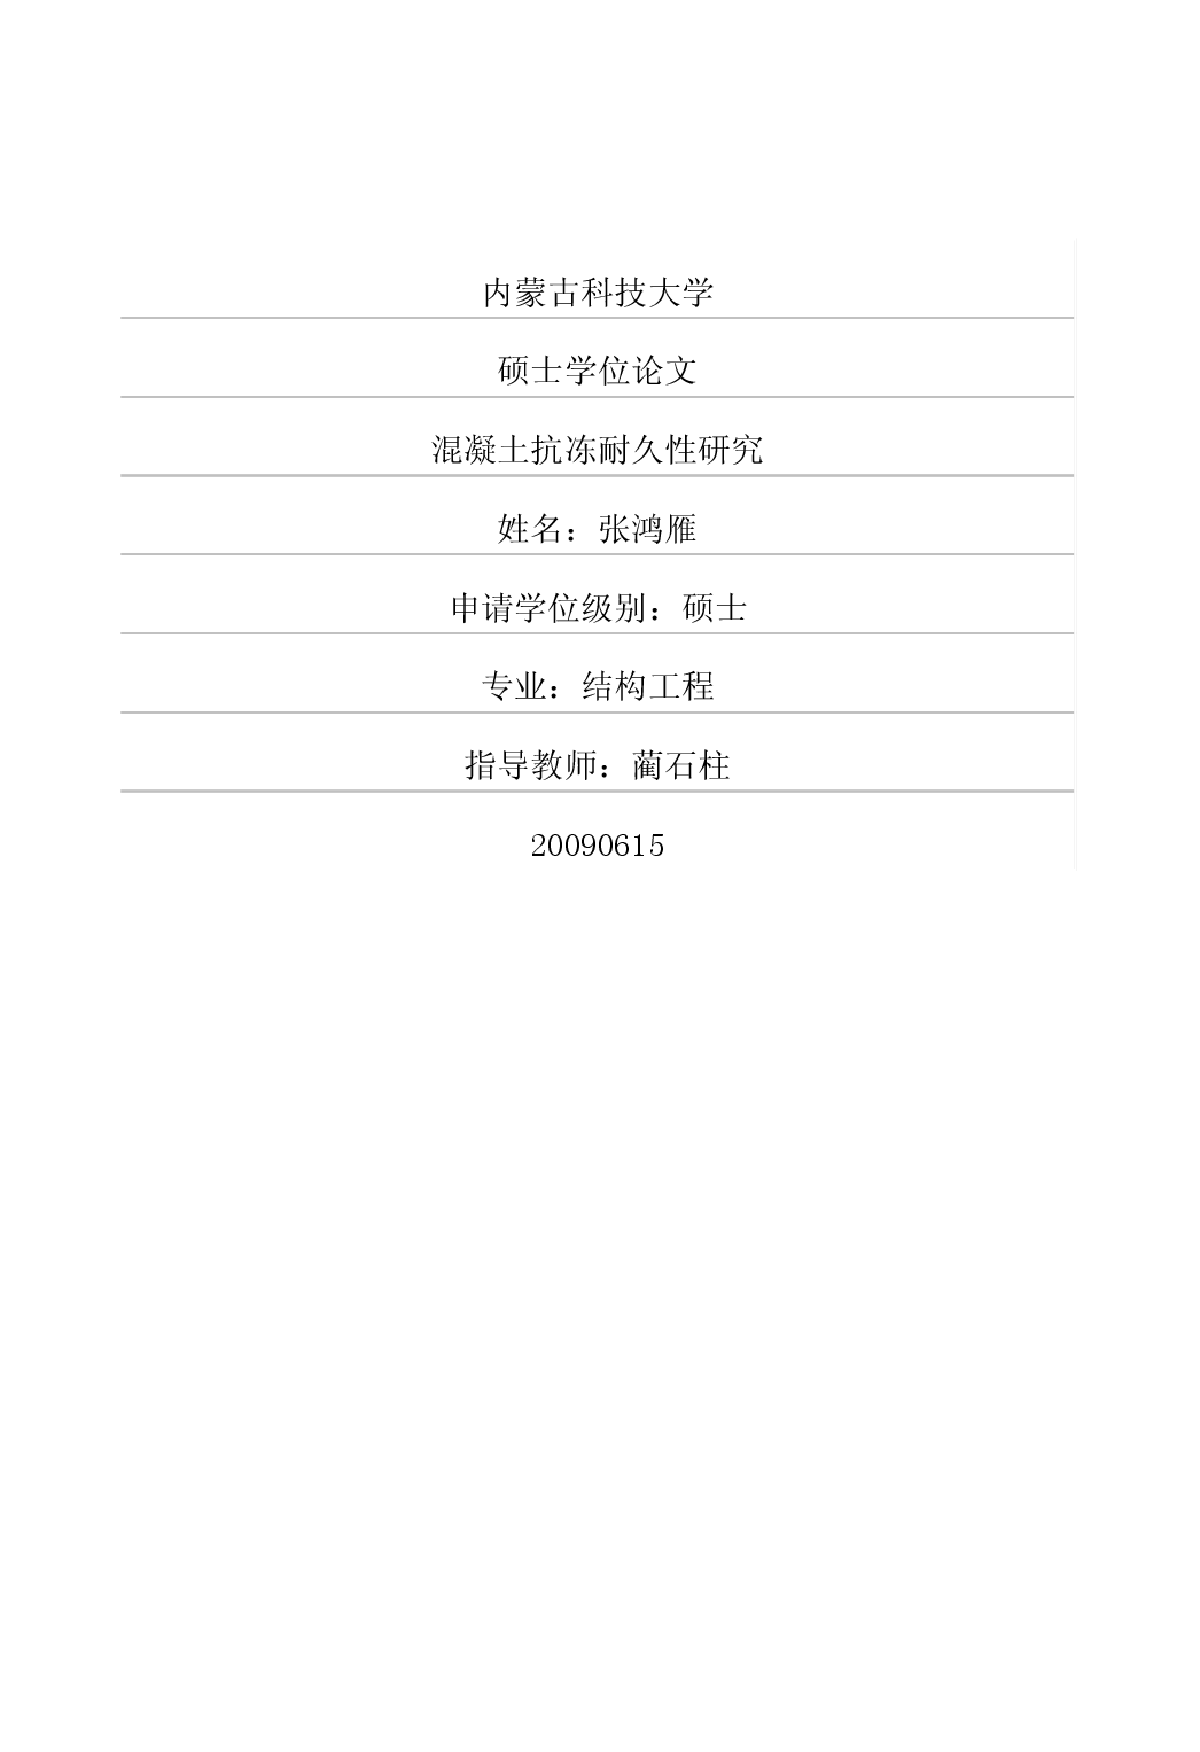 混凝土抗冻耐久性研究.pdf